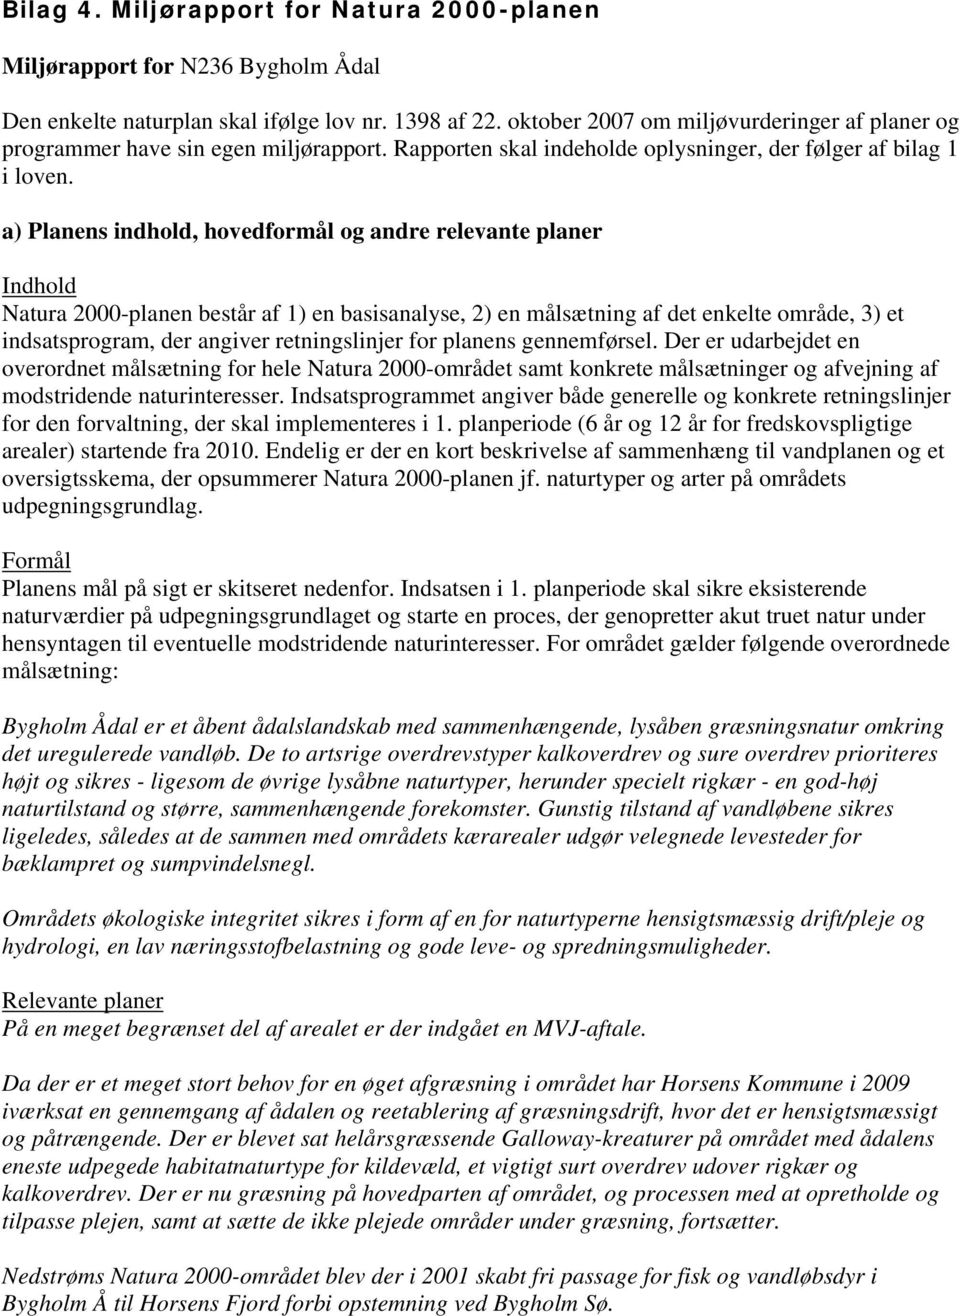 a) Planens indhold, hovedformål og andre relevante planer Indhold Natura 2000-planen består af 1) en basisanalyse, 2) en målsætning af det enkelte område, 3) et indsatsprogram, der angiver